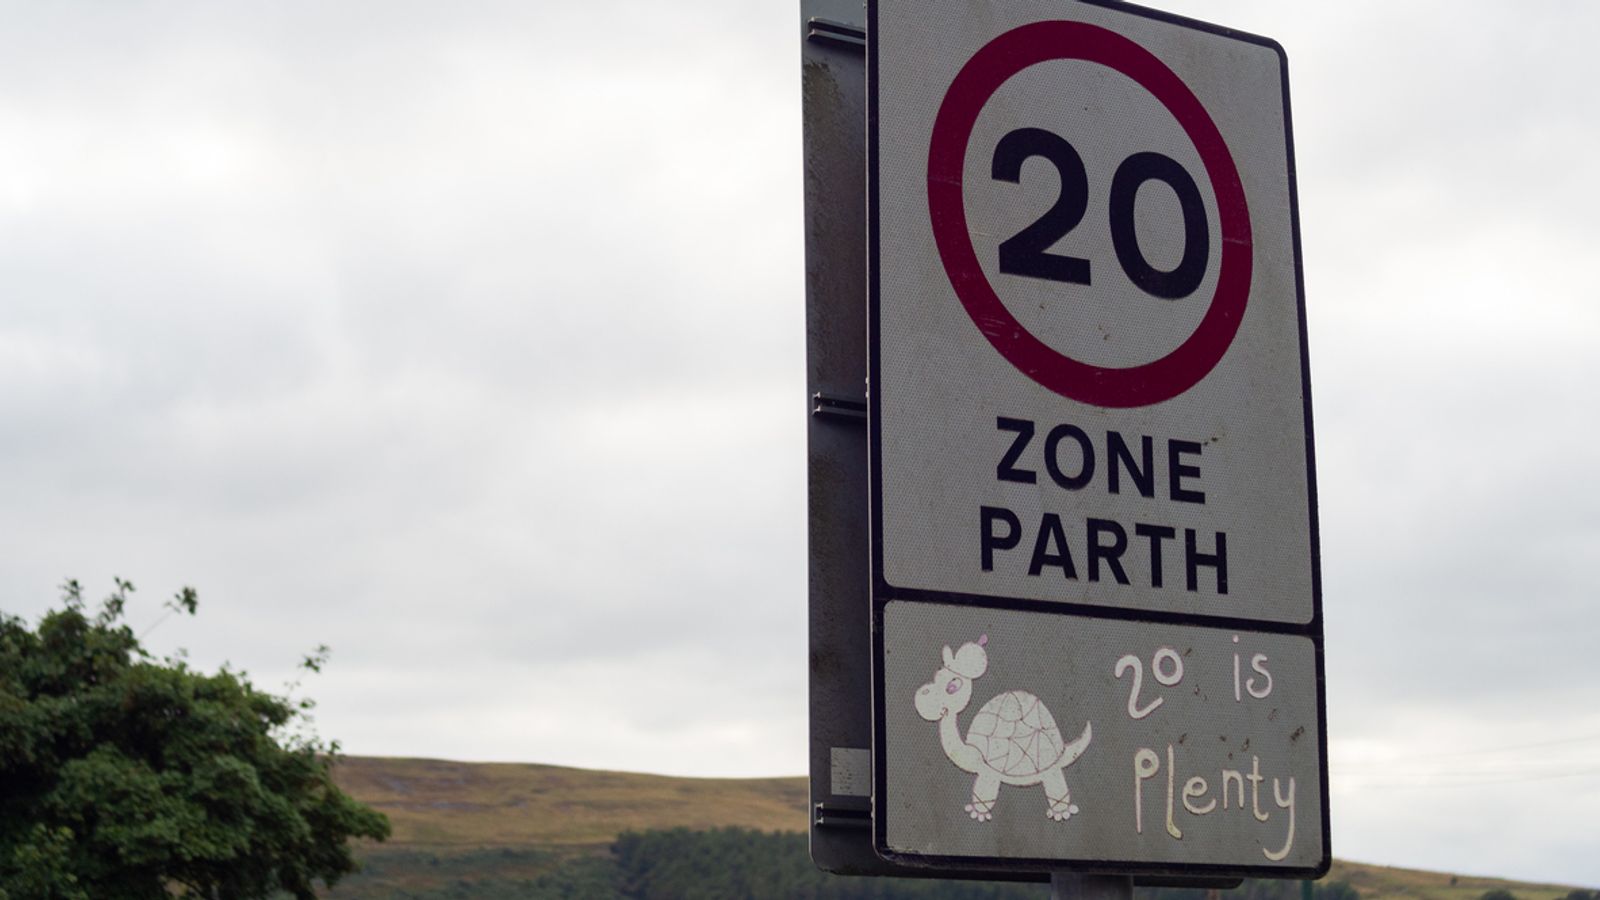 Някои пътища в Уелс ще се върнат обратно на 30 мили в час, след като половин милион призовават за премахване на ограничението на скоростта от 20 мили в час